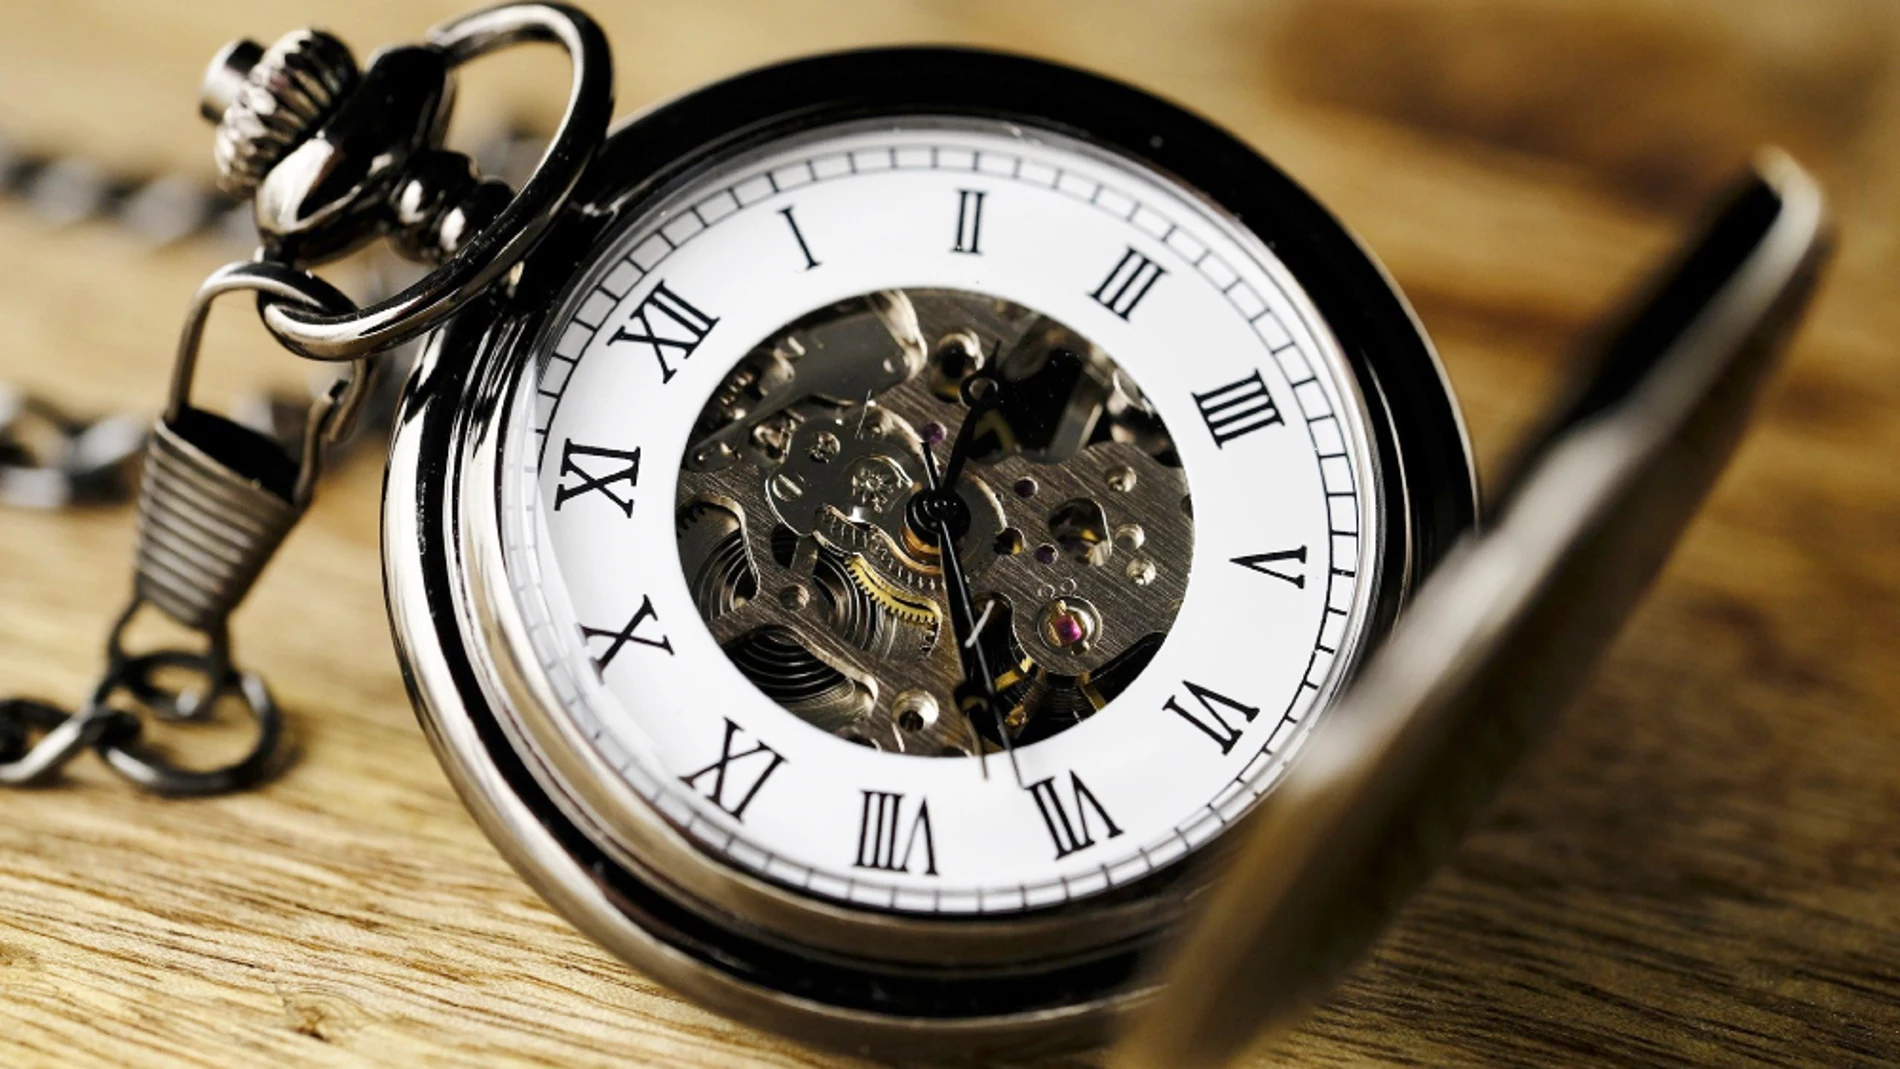 Cambio de hora: ¿Qué pasó con la normativa europea que eliminaba el cambio de hora?